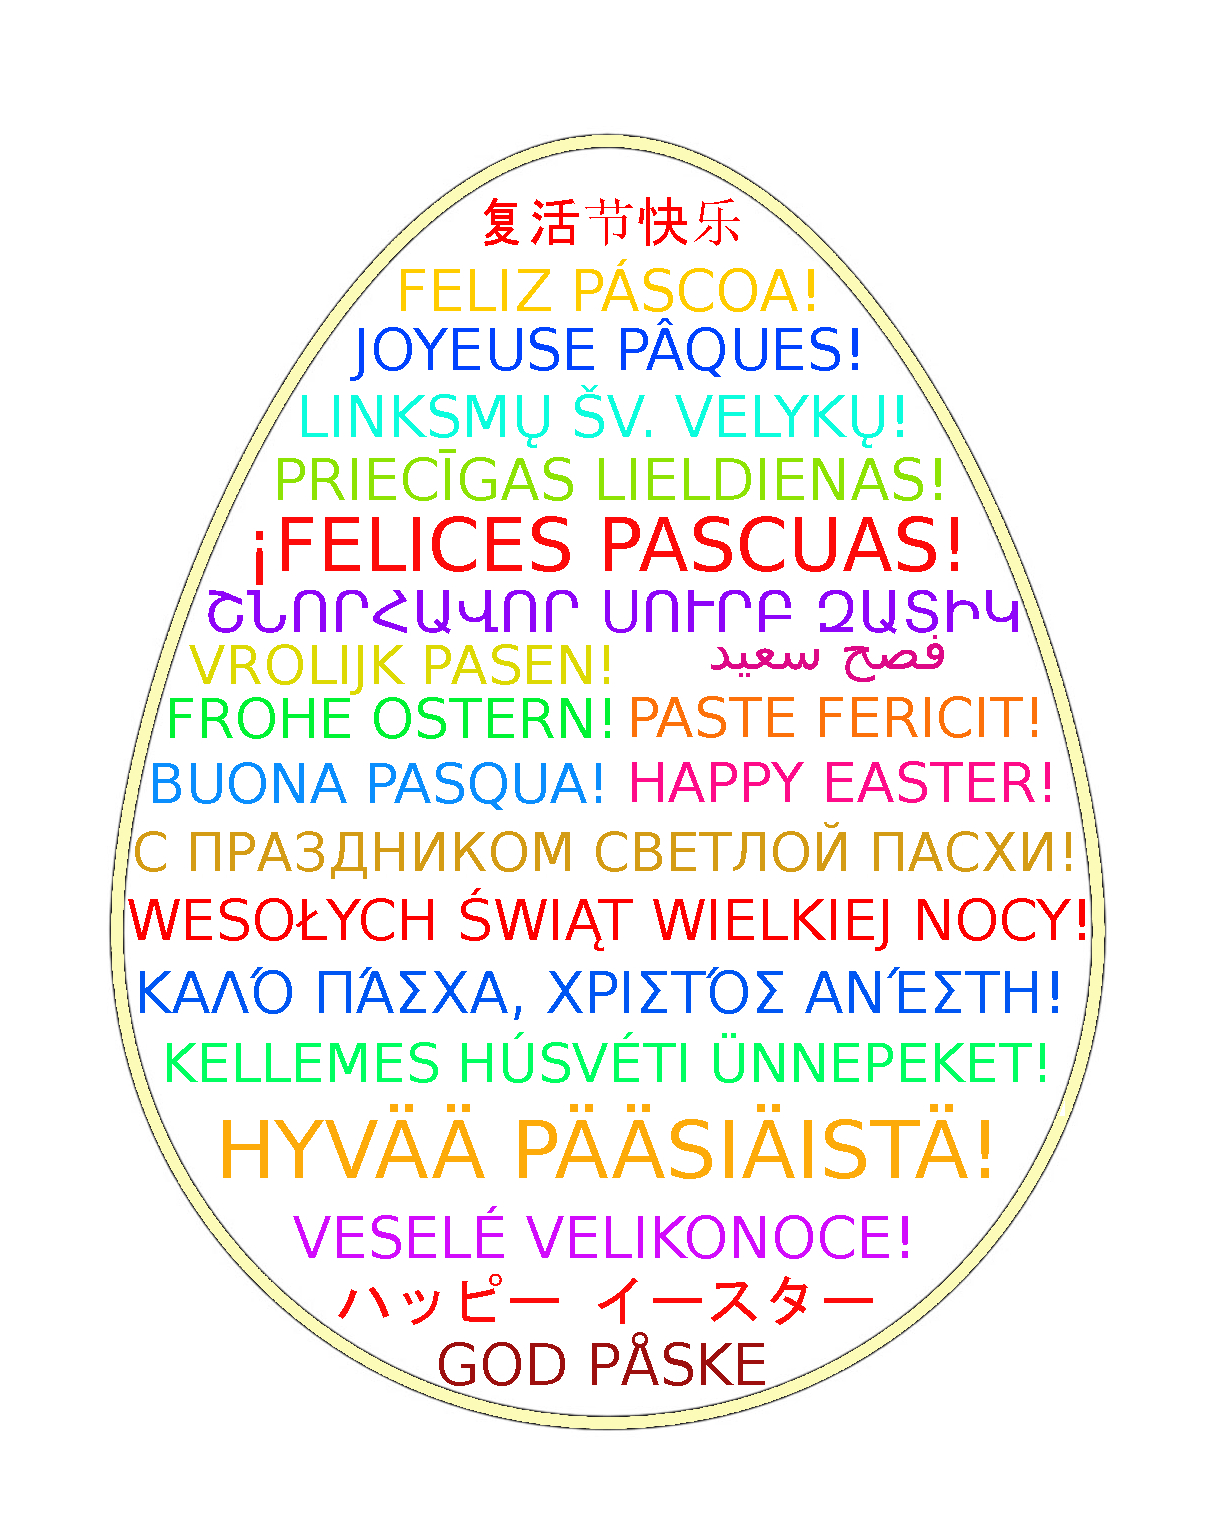 życzenia w 21 językach